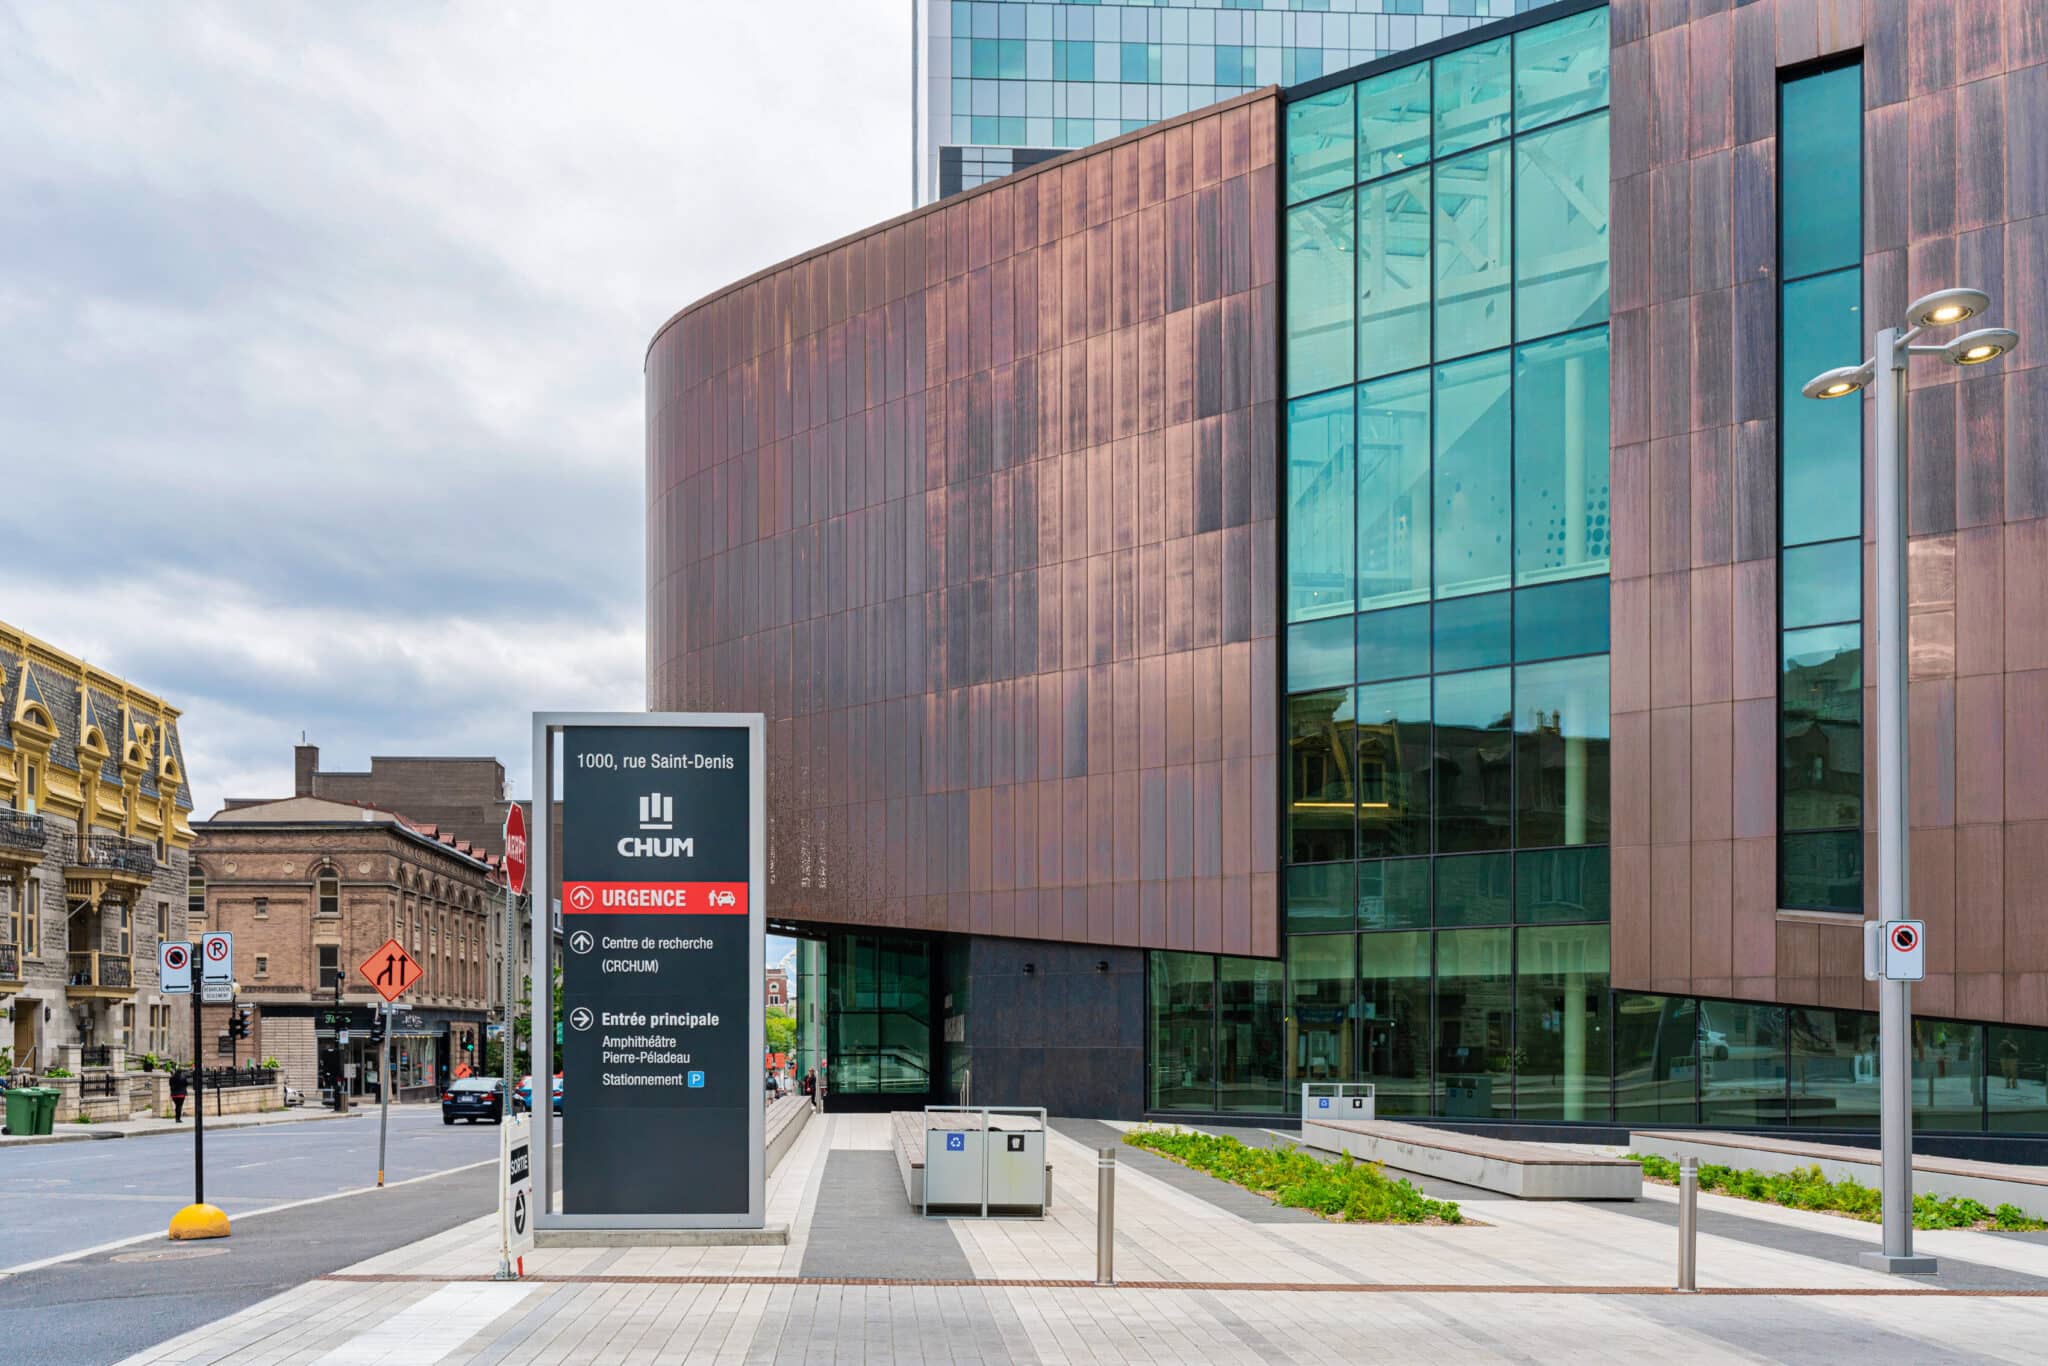 Arium Design - Stèle directionnelle extérieure orientant les usagers vers l'urgence, le centre de recherche et l'entrée principale du Centre hospitalier de l'Université de Montréal.